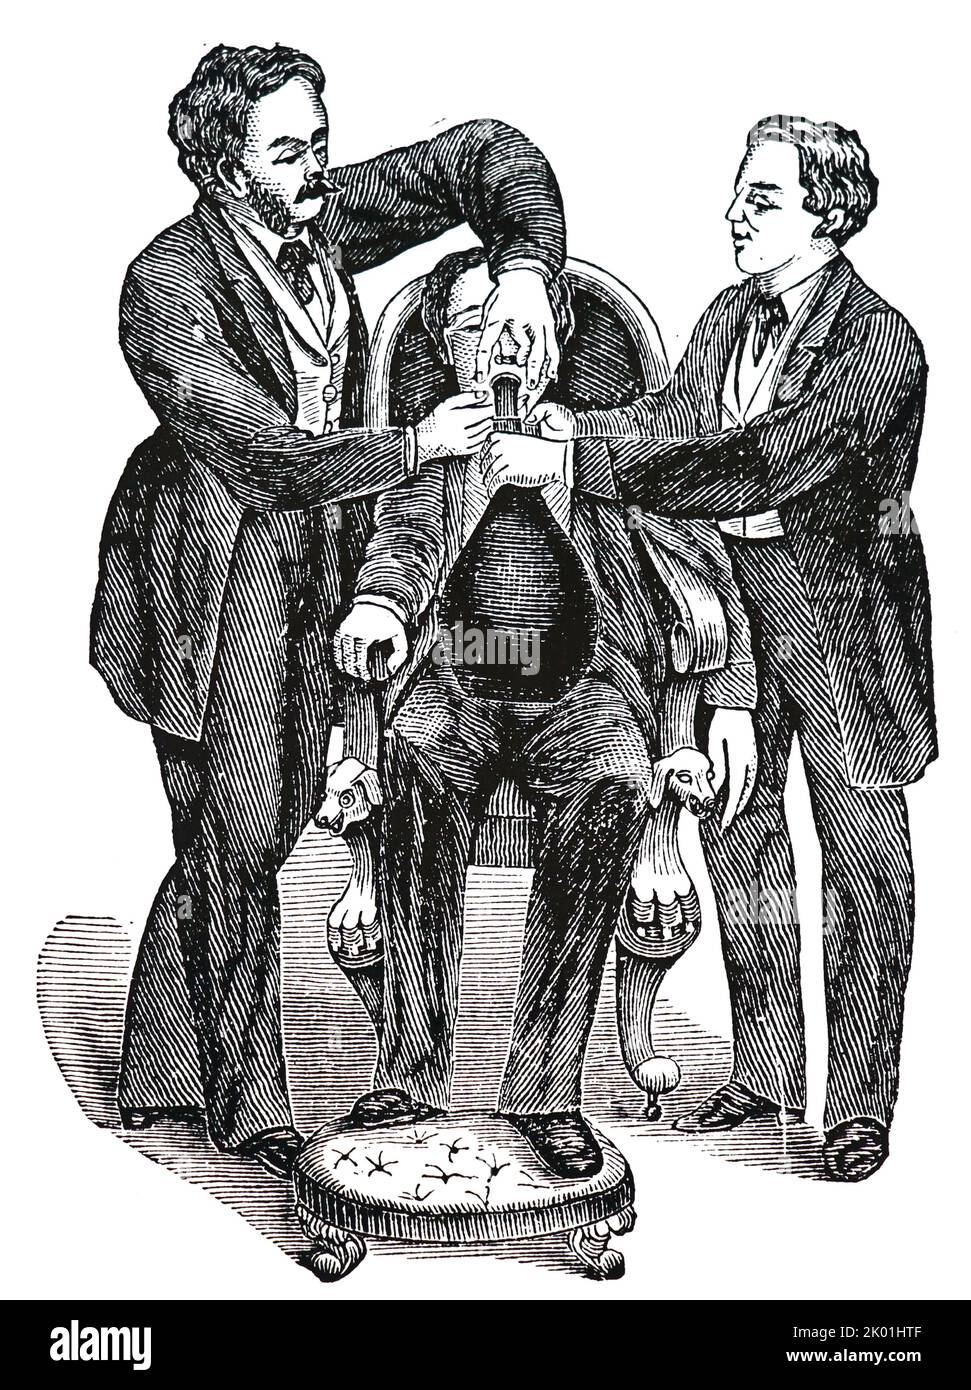 Première méthode de distribution d'oxyde nitreux (gaz riant). Il ne s'agissait que d'un embout buccal relié à un sac de gaz par un tube. De Henry M Lyman anesthésie artificielle et Anaesthestics, Londres, 1883. Banque D'Images